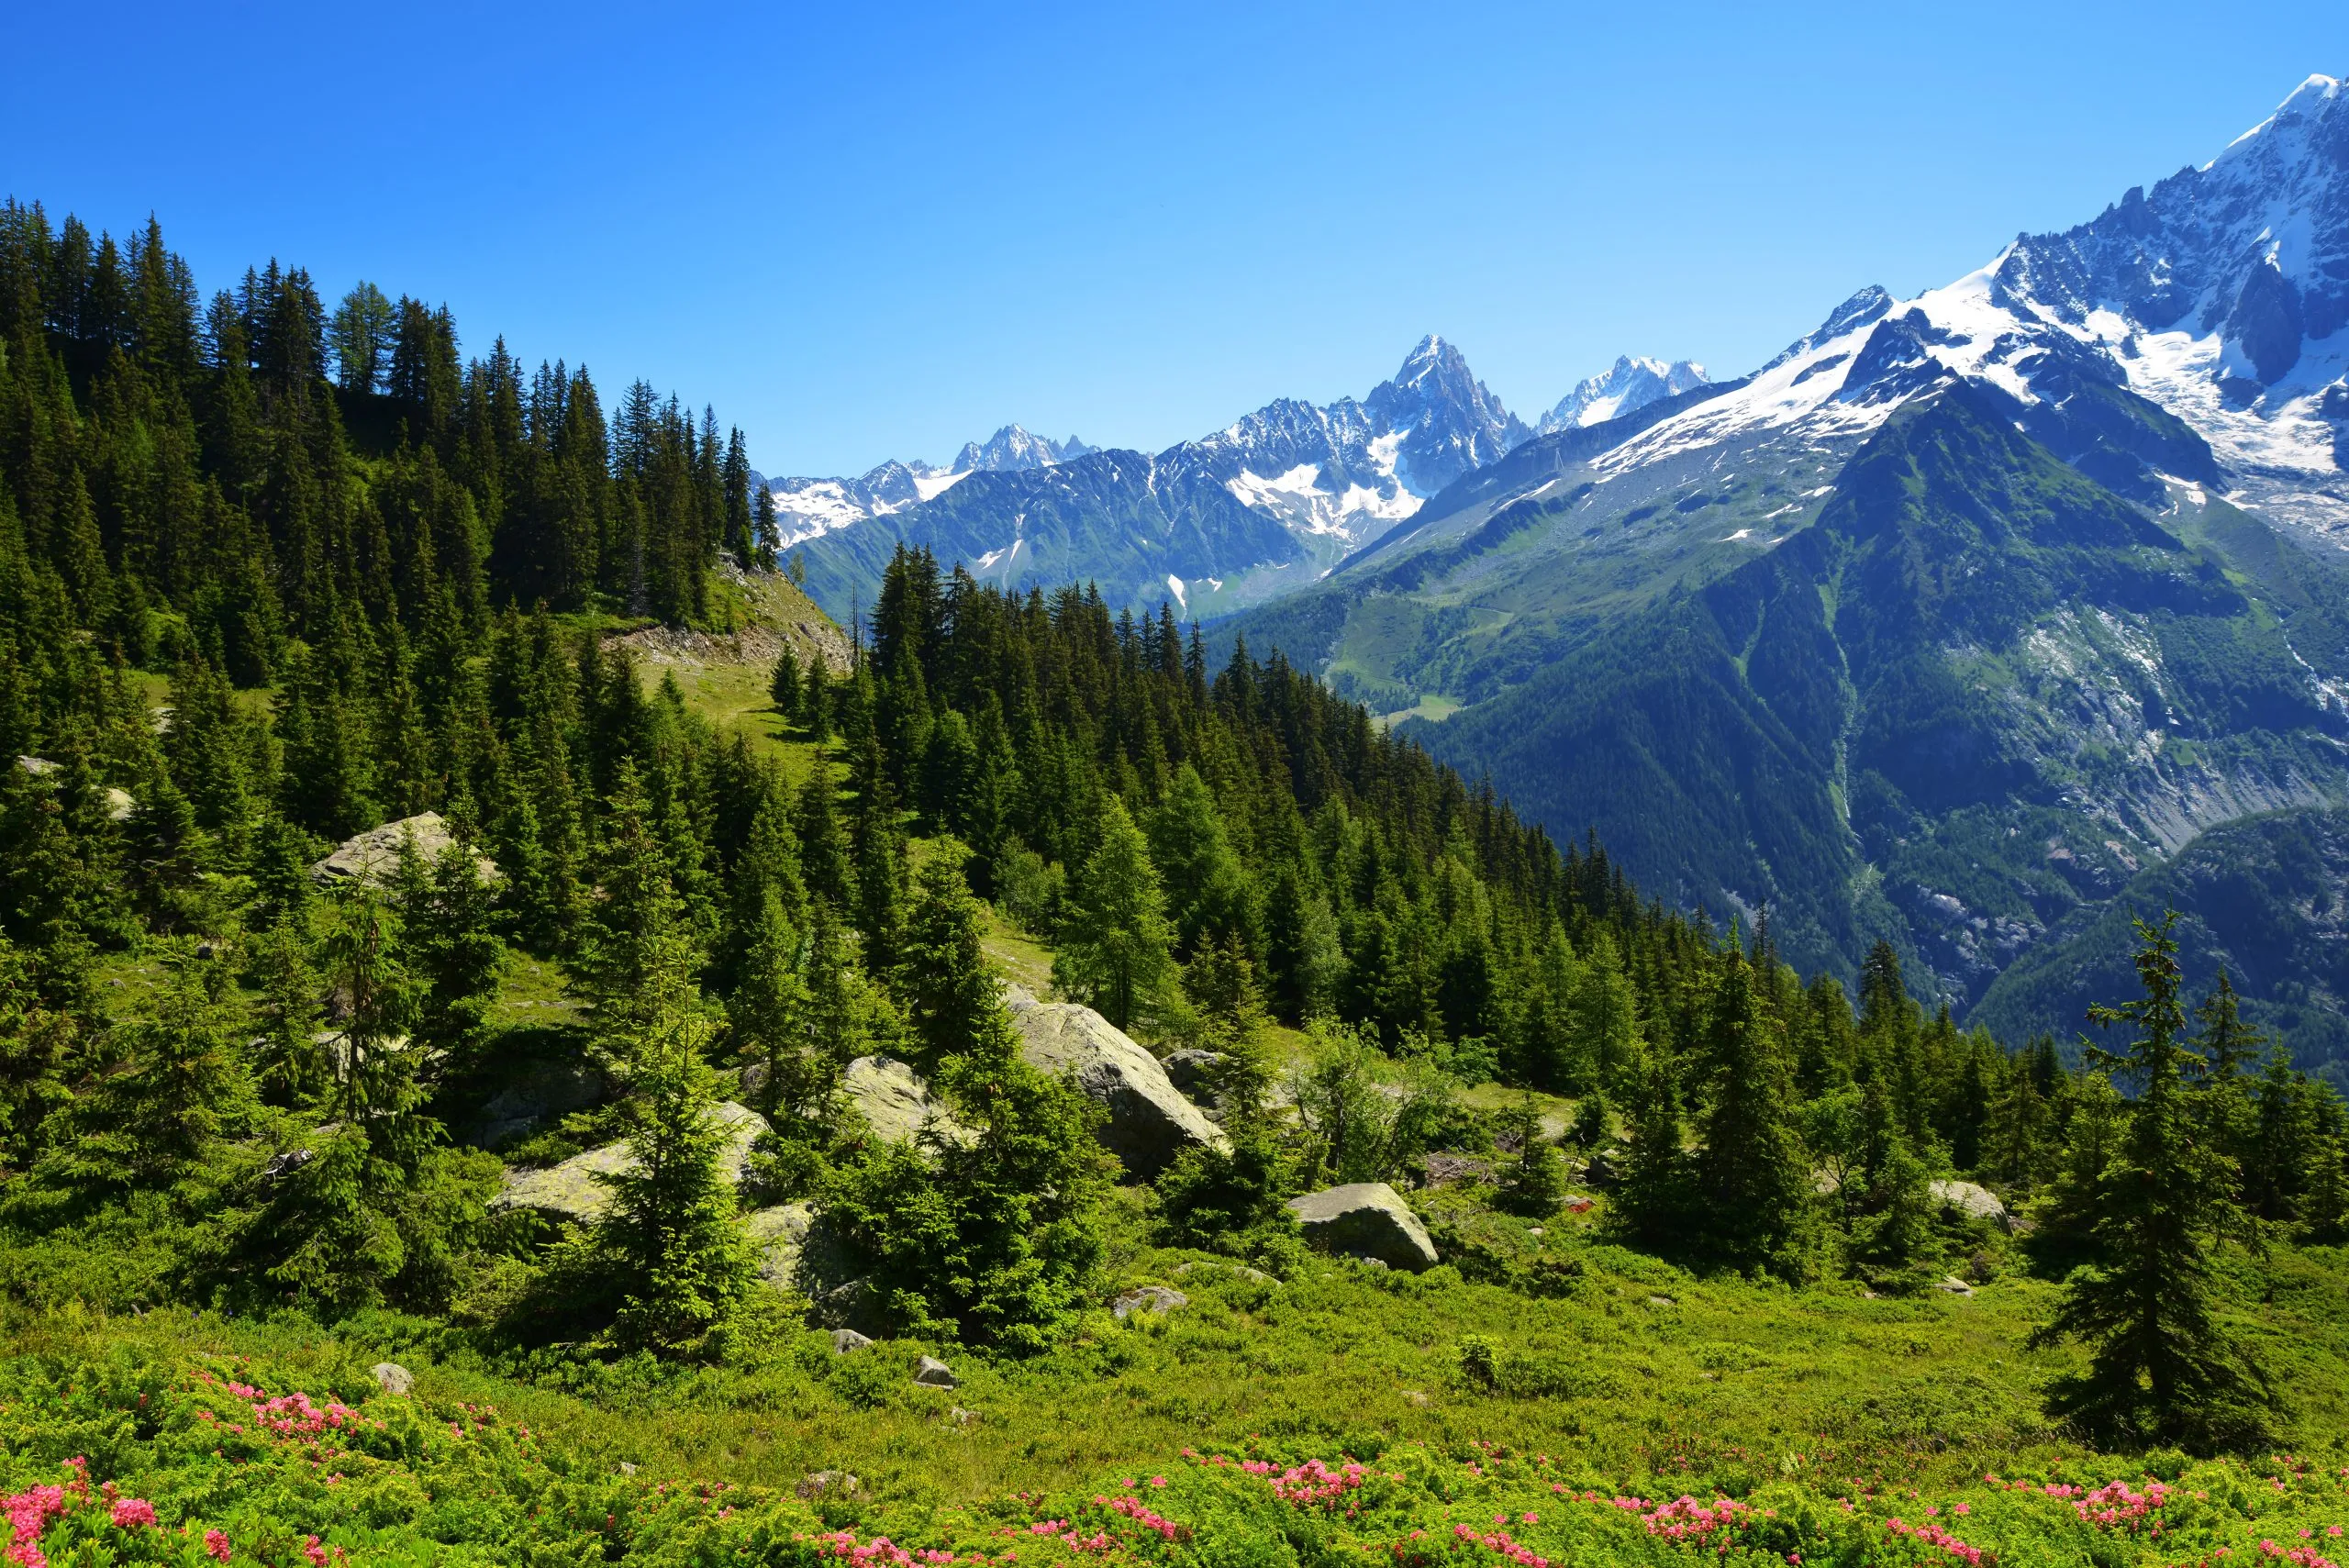 Nature Reserve Aiguilles Rouges, Graian Alps, France, Europe.